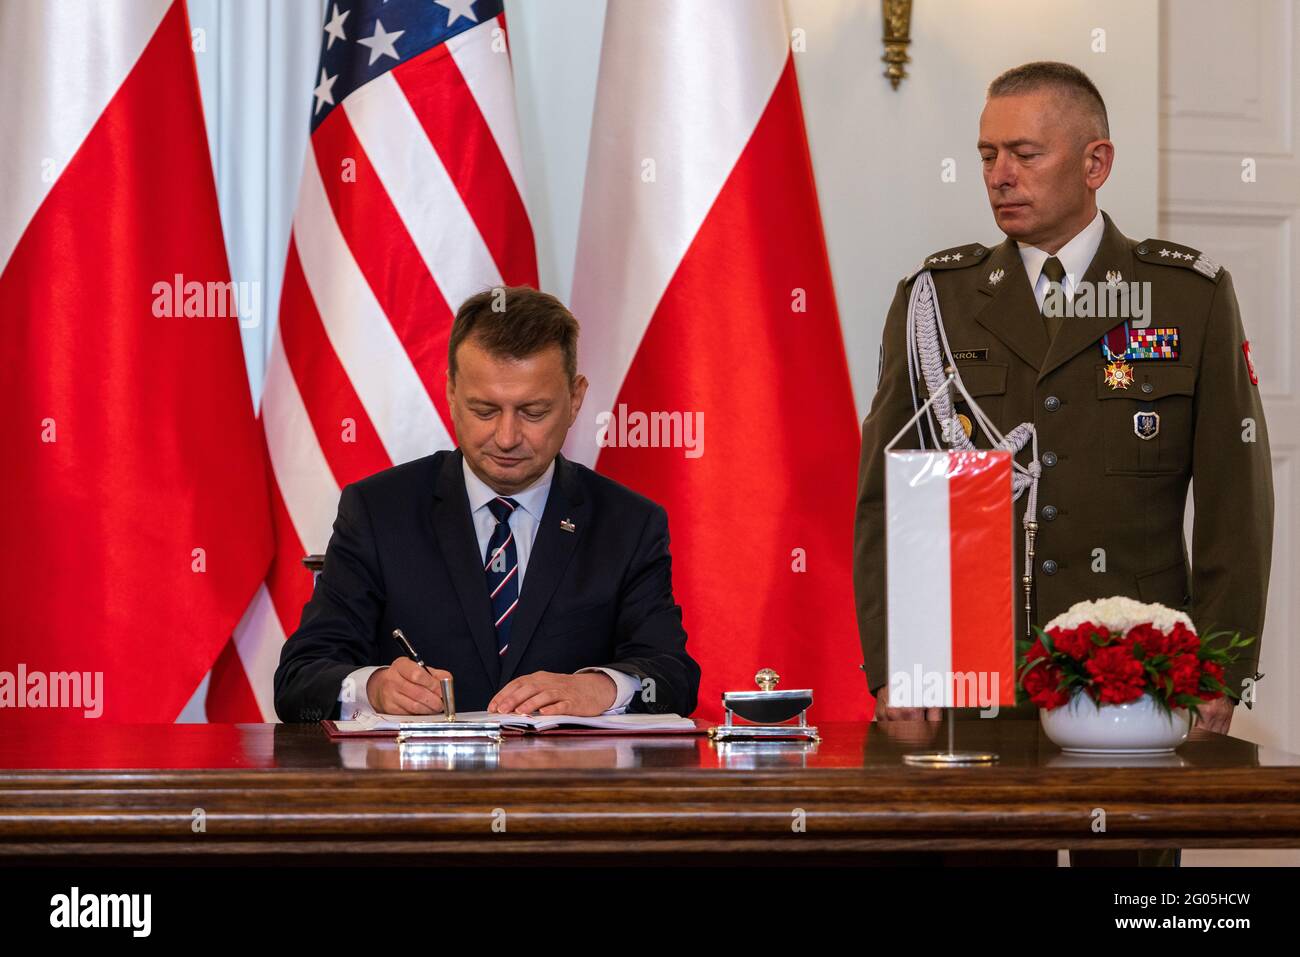 Le secrétaire d'État Michael R. Pompeo participe à une cérémonie de signature d'un accord de coopération renforcée entre les États-Unis et la Pologne avec le président polonais Andrzej Duda et le ministre polonais de la Défense nationale Mariusz Błaszczak, à Varsovie, en Pologne, le 15 août 2020 Banque D'Images